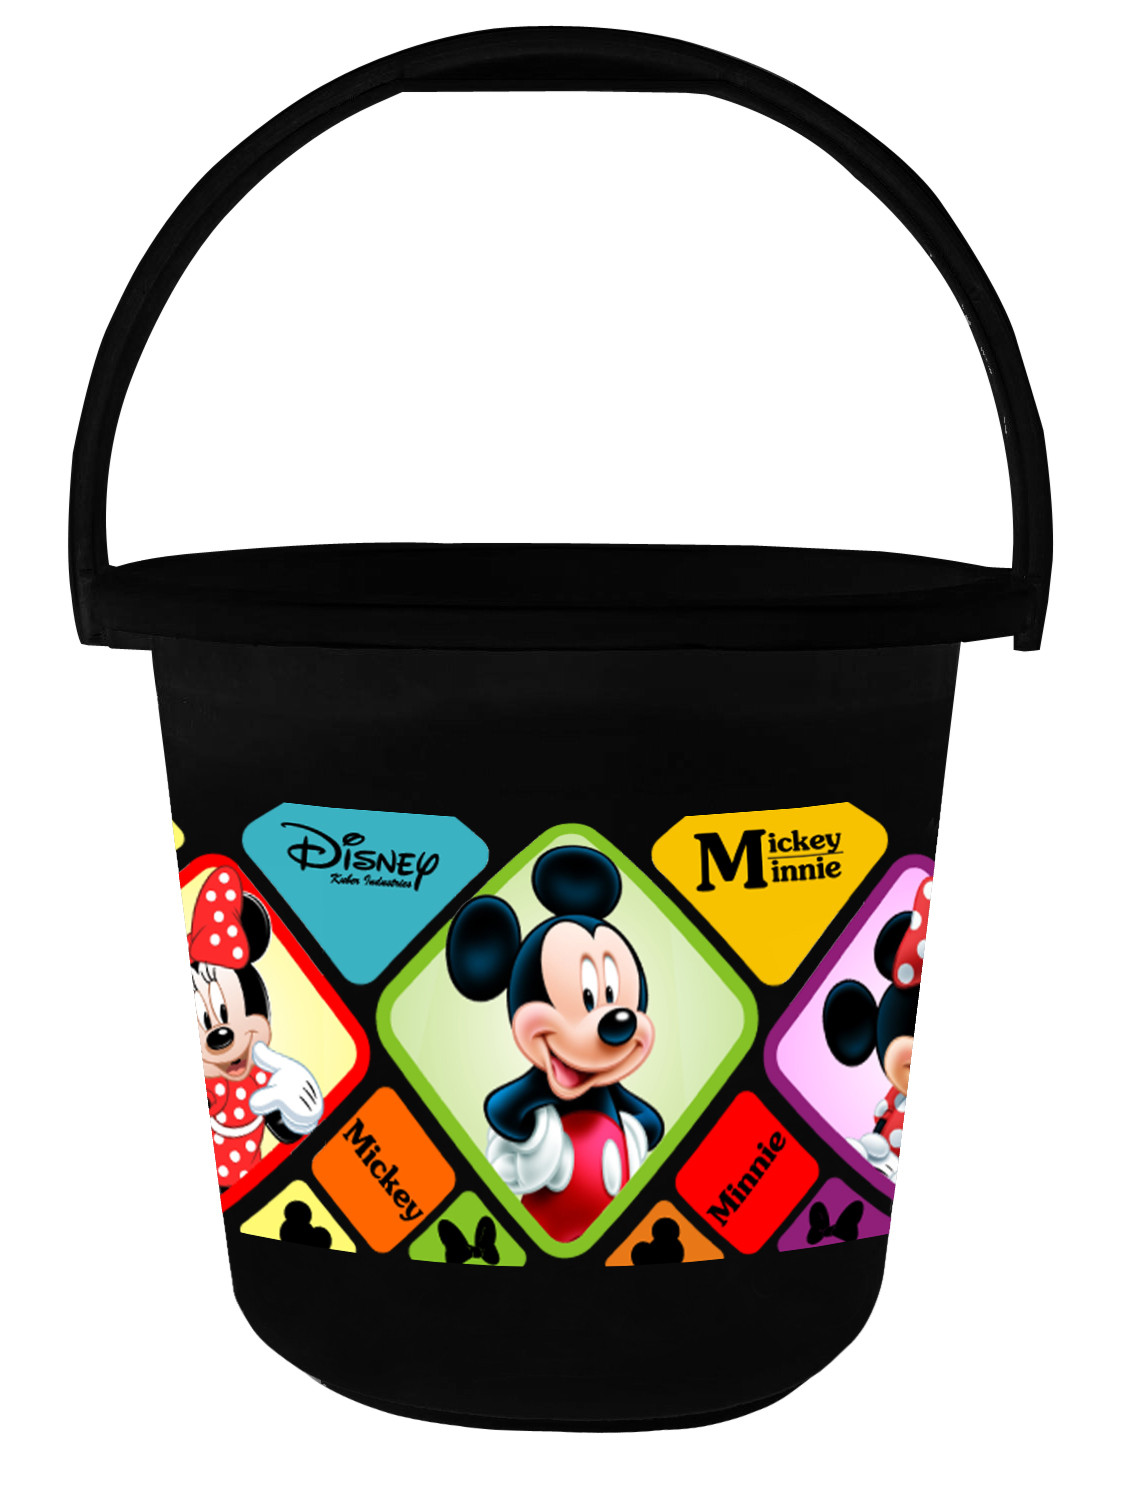 Kuber Industries Disney Mickey Minnie Print Unbreakable Virgin Plastic Strong Bathroom Bucket ,16 LTR (Blue & Black)-Pack of 2 -HS_35_KUBMART17861